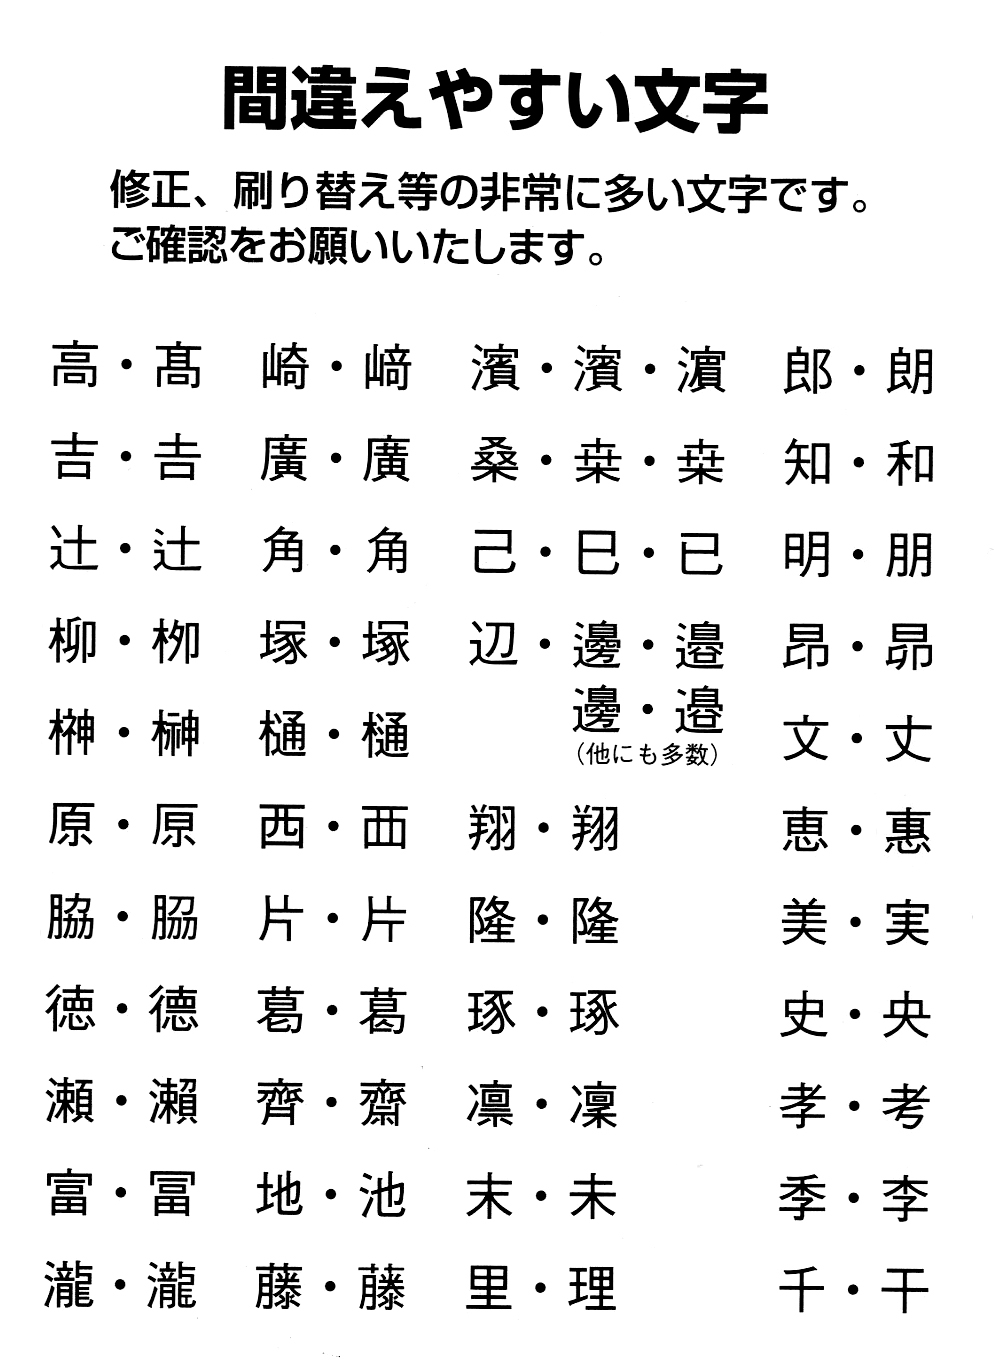 苗字の漢字は組み合わせがいっぱい 印刷前に気をつけたいポイント